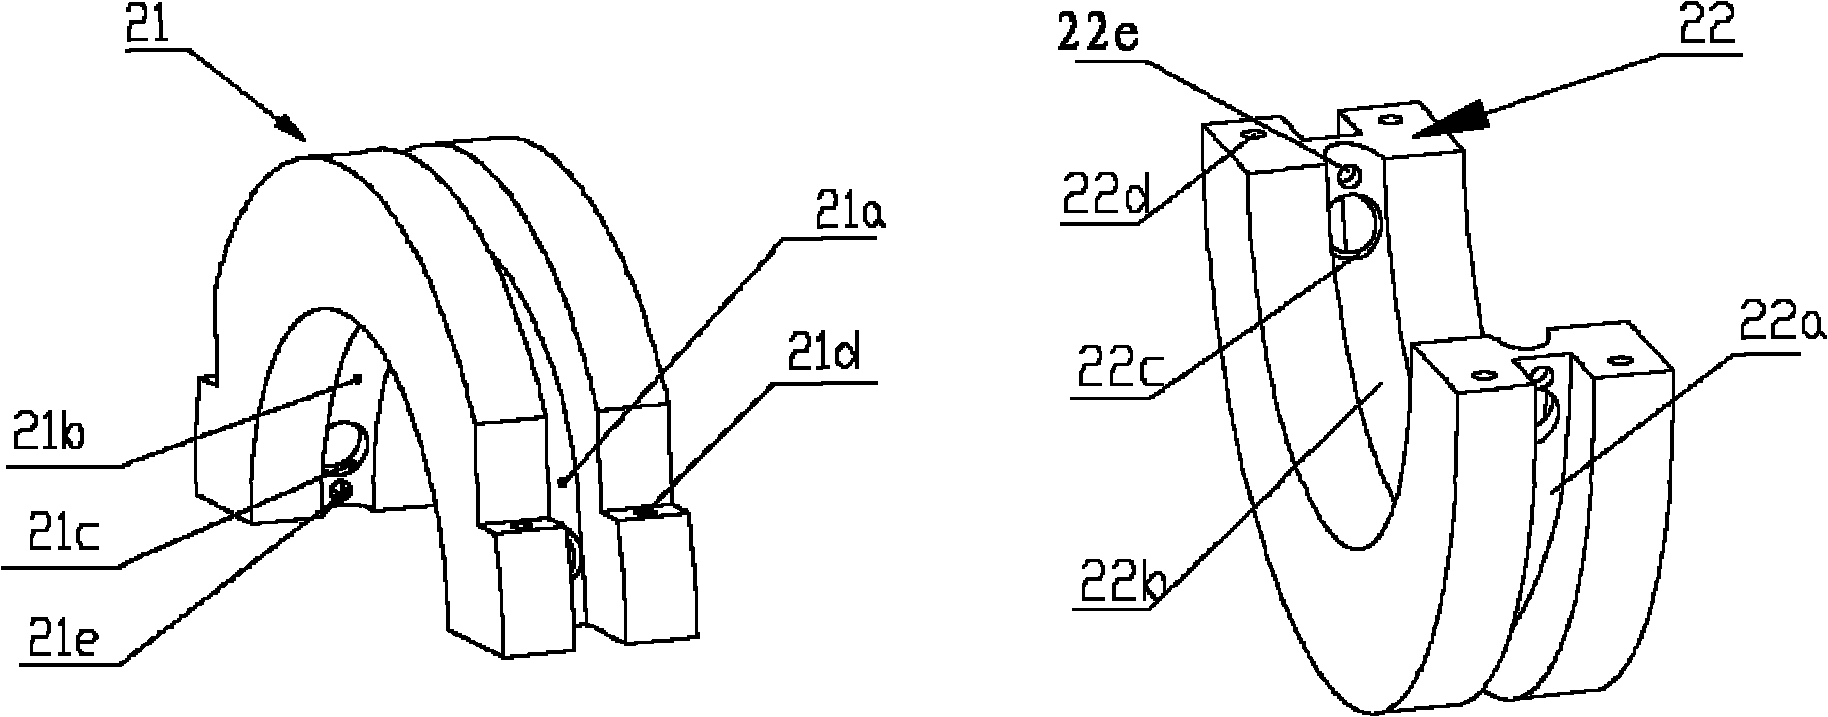 Circulating roller split bearing